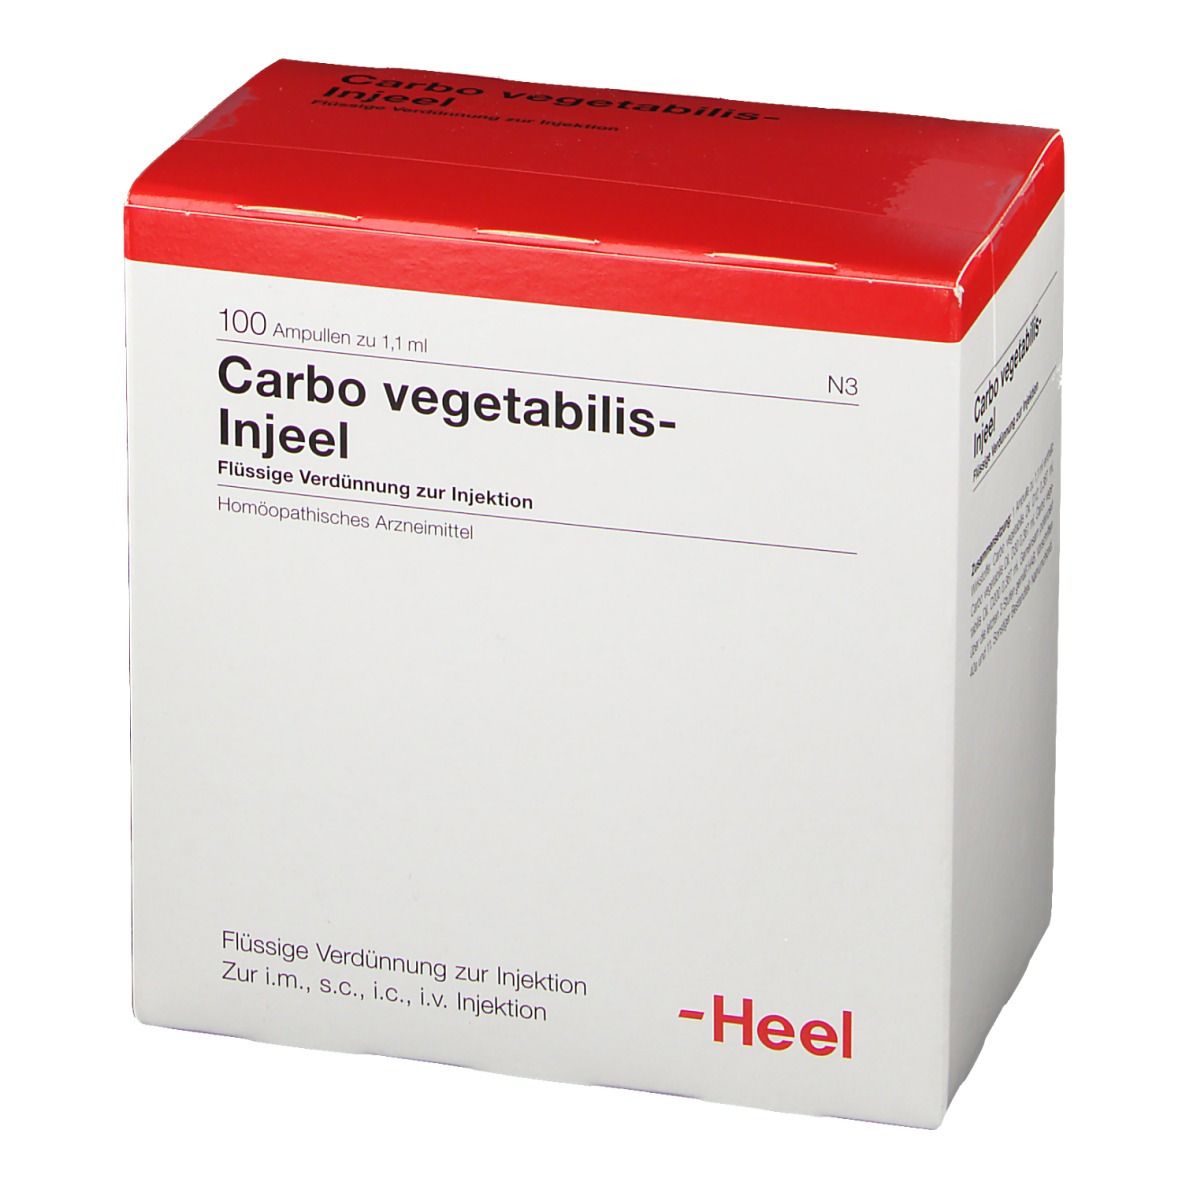 Carbo vegetabilis-Injeel® Ampullen